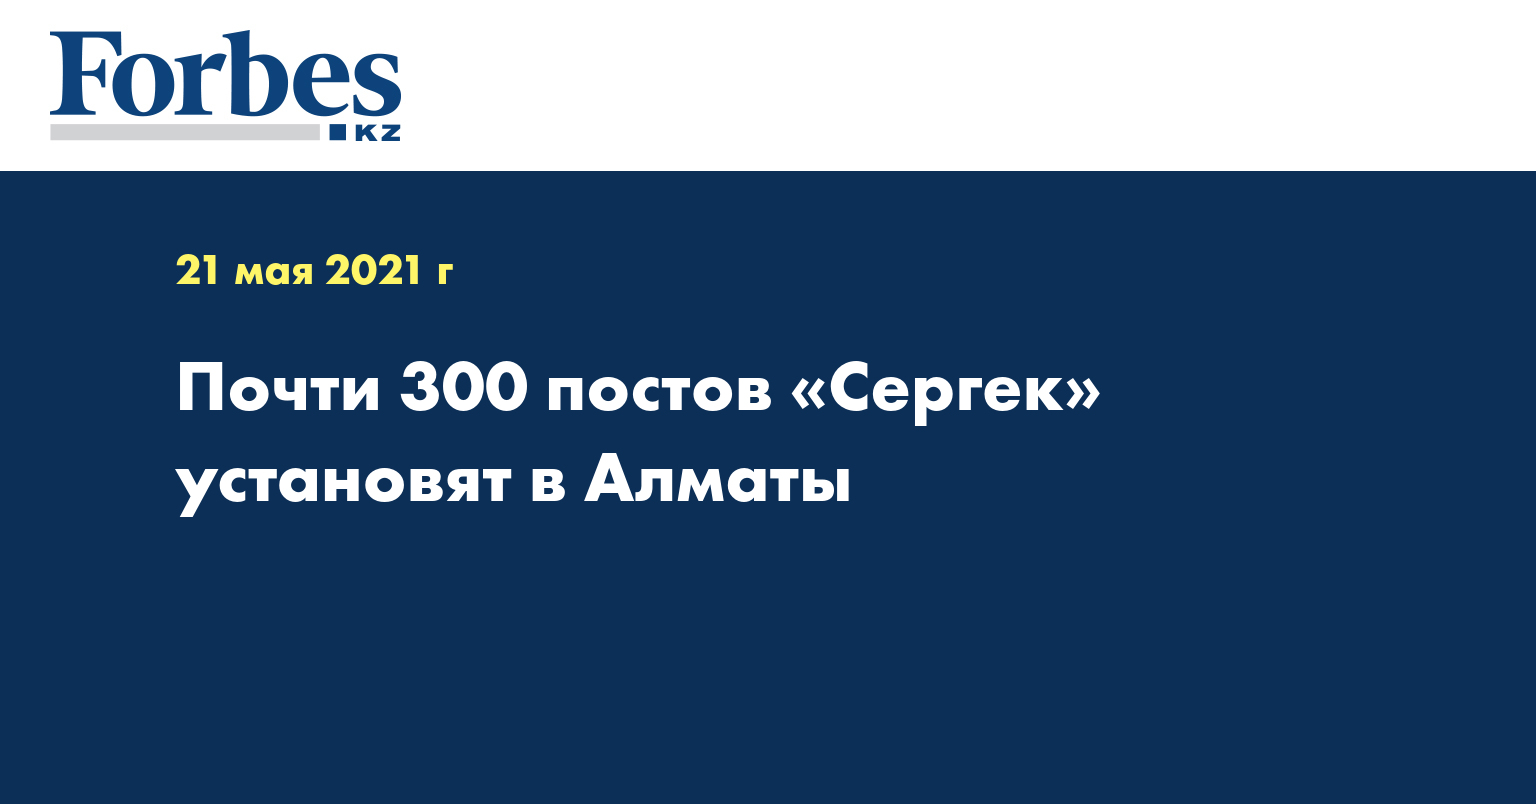 Почти 300 постов «Сергек» установят в Алматы